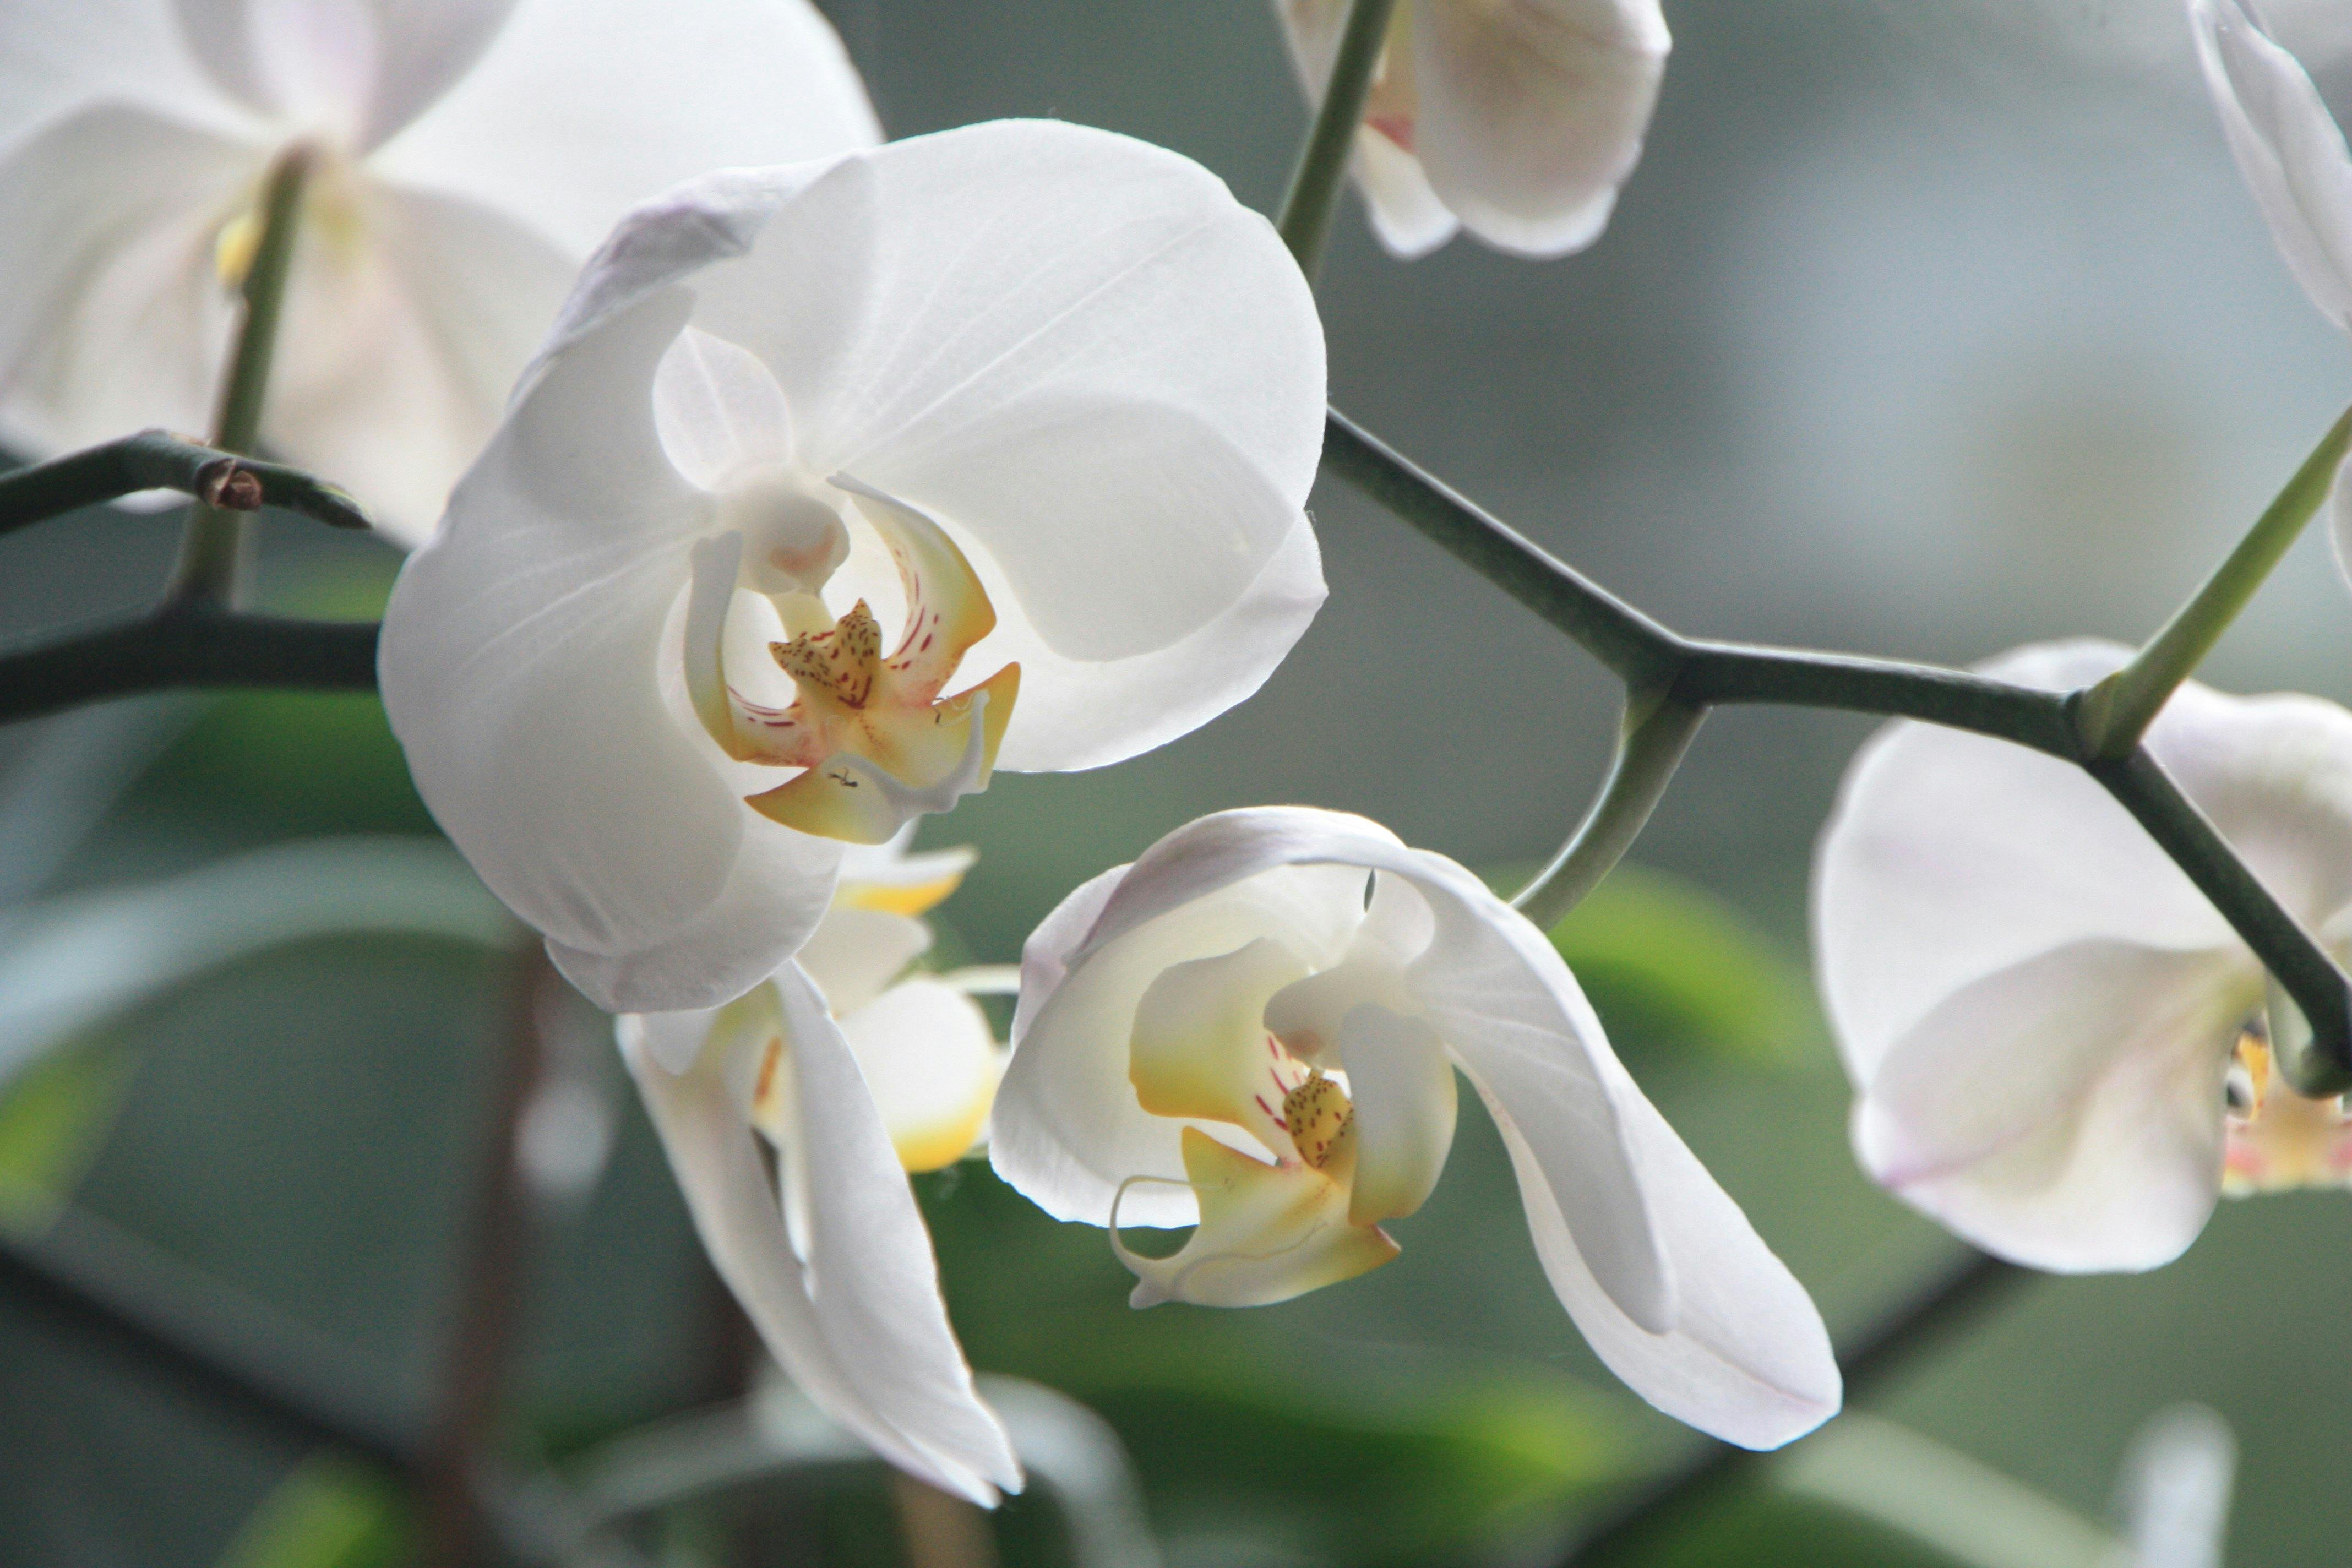 Hình ảnh hoa lan đẹp xuất sắc quý hiếm nhất trần gian